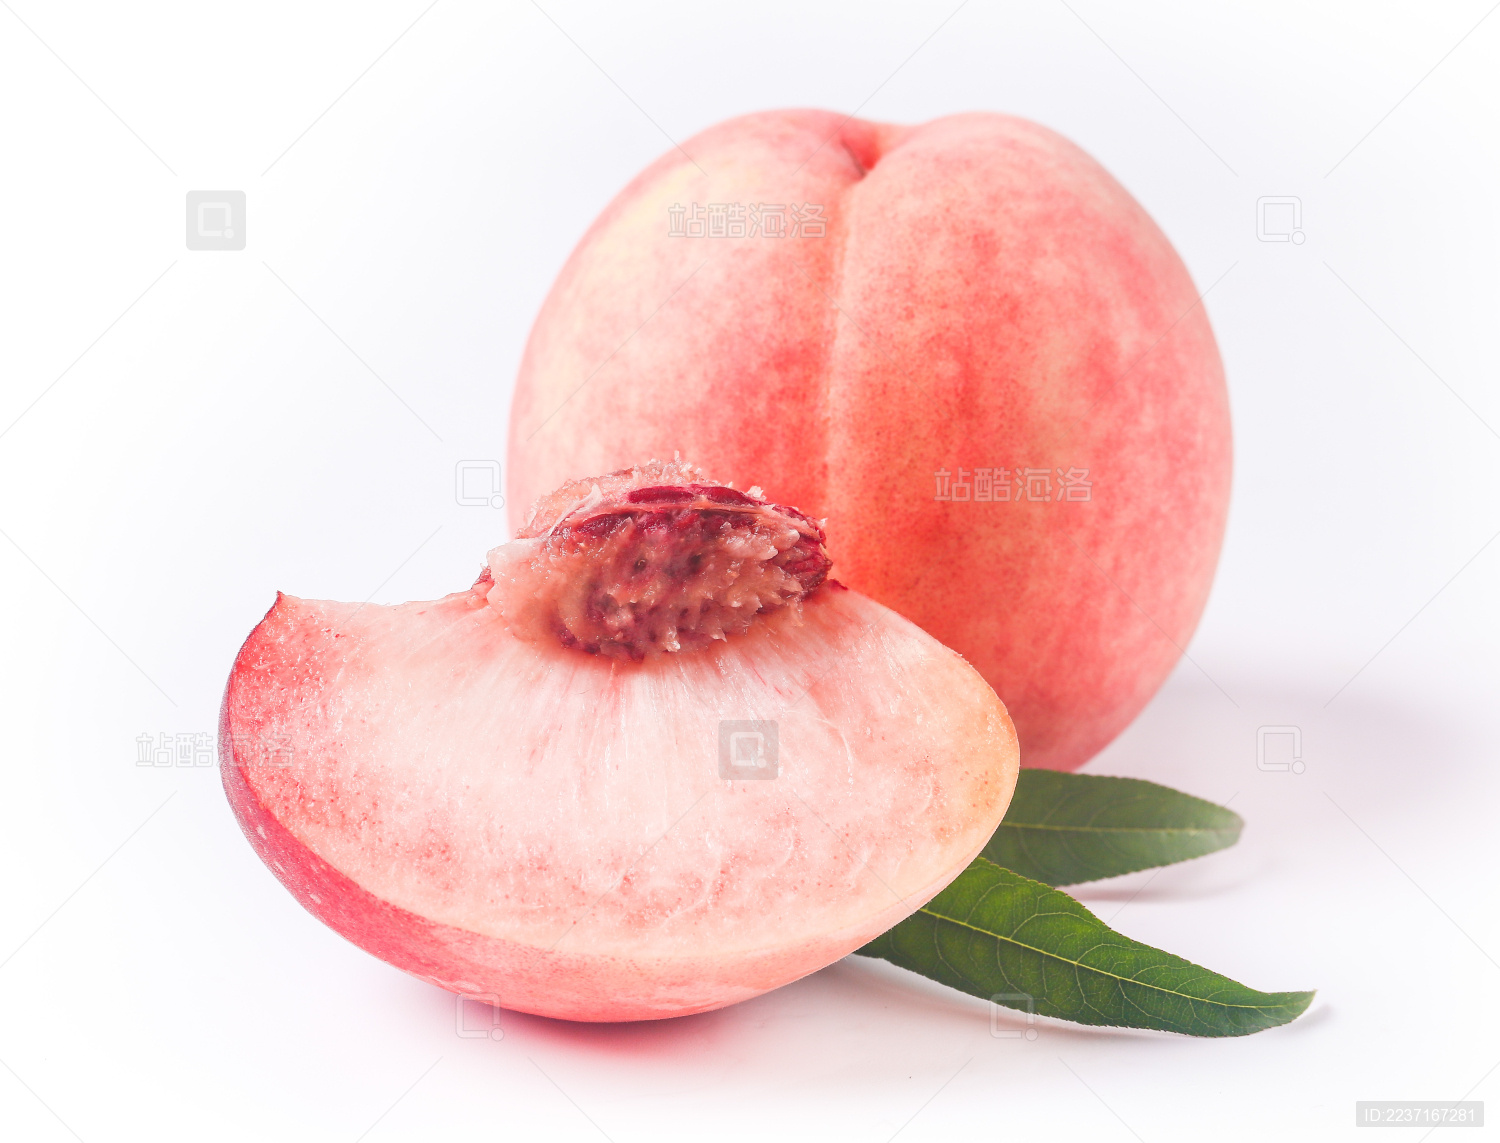 切的新鲜的桃子 库存图片. 图片 包括有 桃子, 有机, 本质, 得克萨斯, 甜甜, 新鲜, 水多, 健康 - 15169495